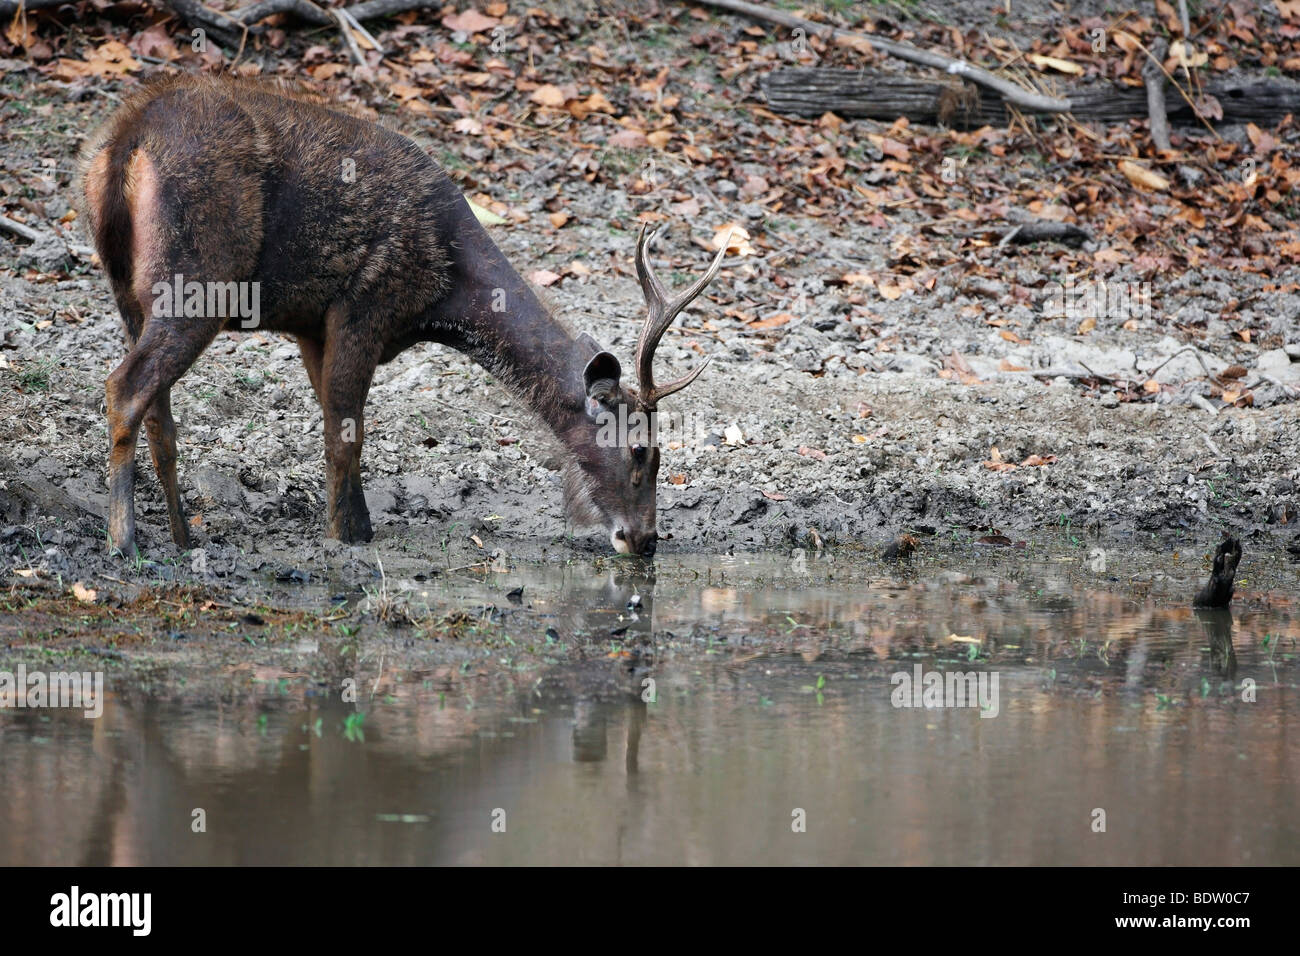 sambarhirsch im khana nationalpark, indien, sambar deer, cervus unicolor, khana national park, india Stock Photo